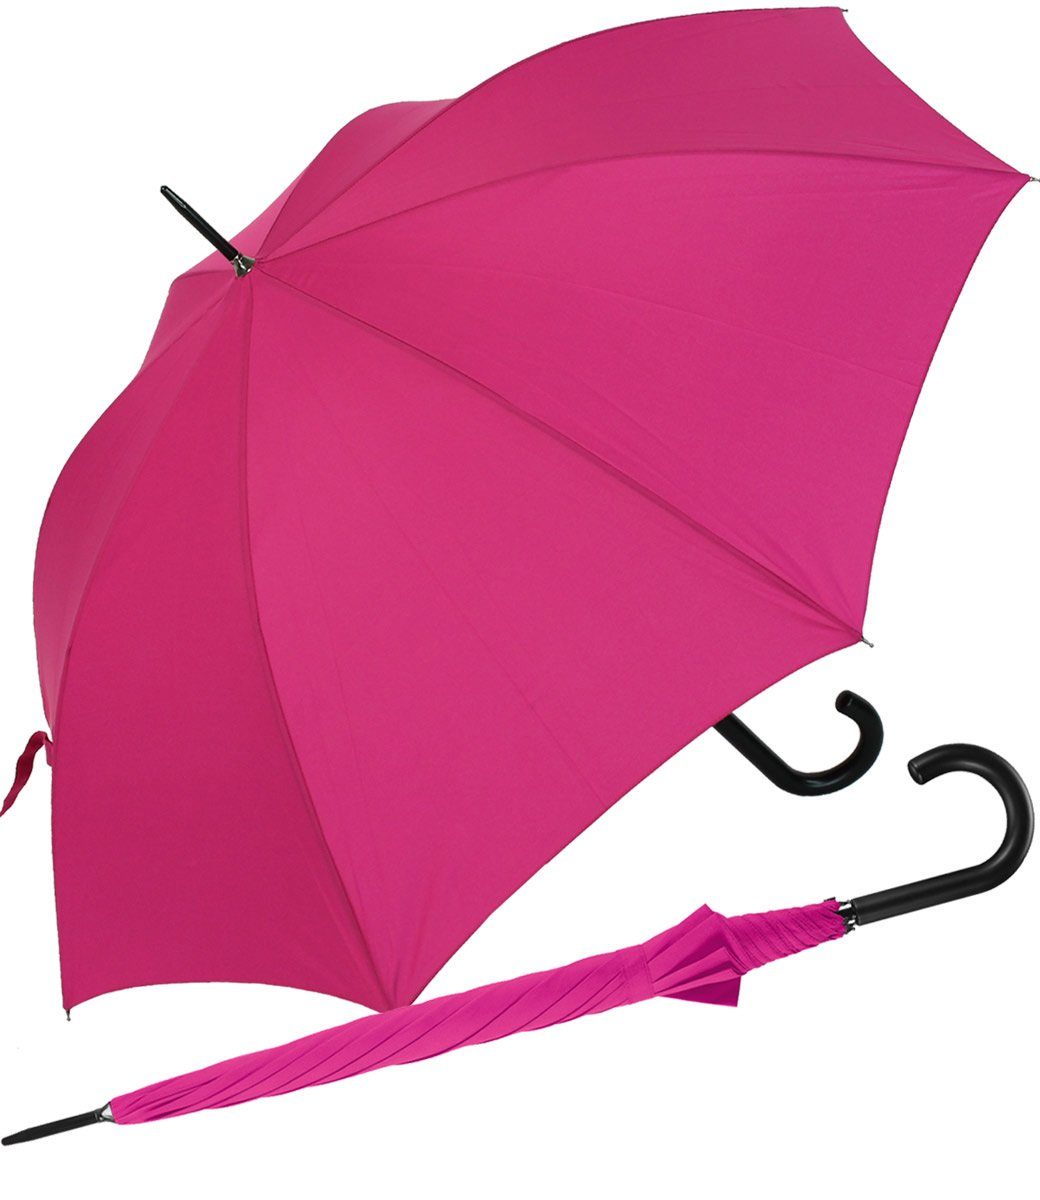 für und Farben in Herren großer Auf-Automatik, modischen pink Regenschirm Damen Langregenschirm vielen mit RS-Versand stabiler